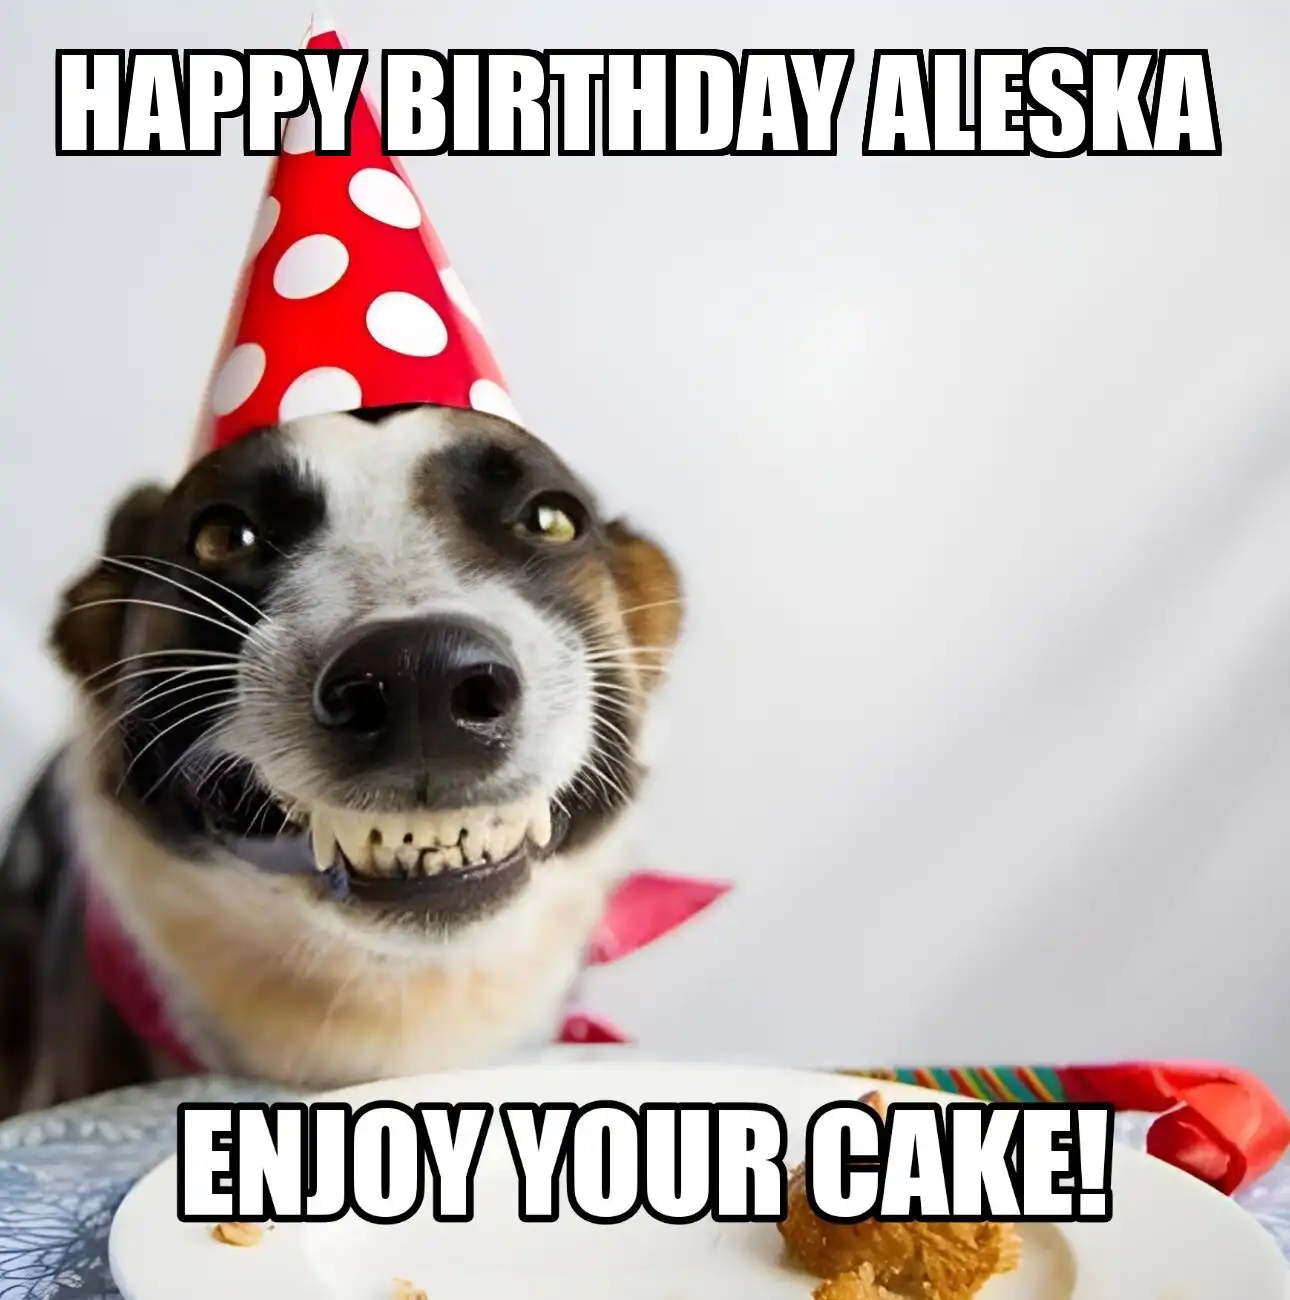 Happy Birthday Aleska Enjoy Your Cake Dog Meme